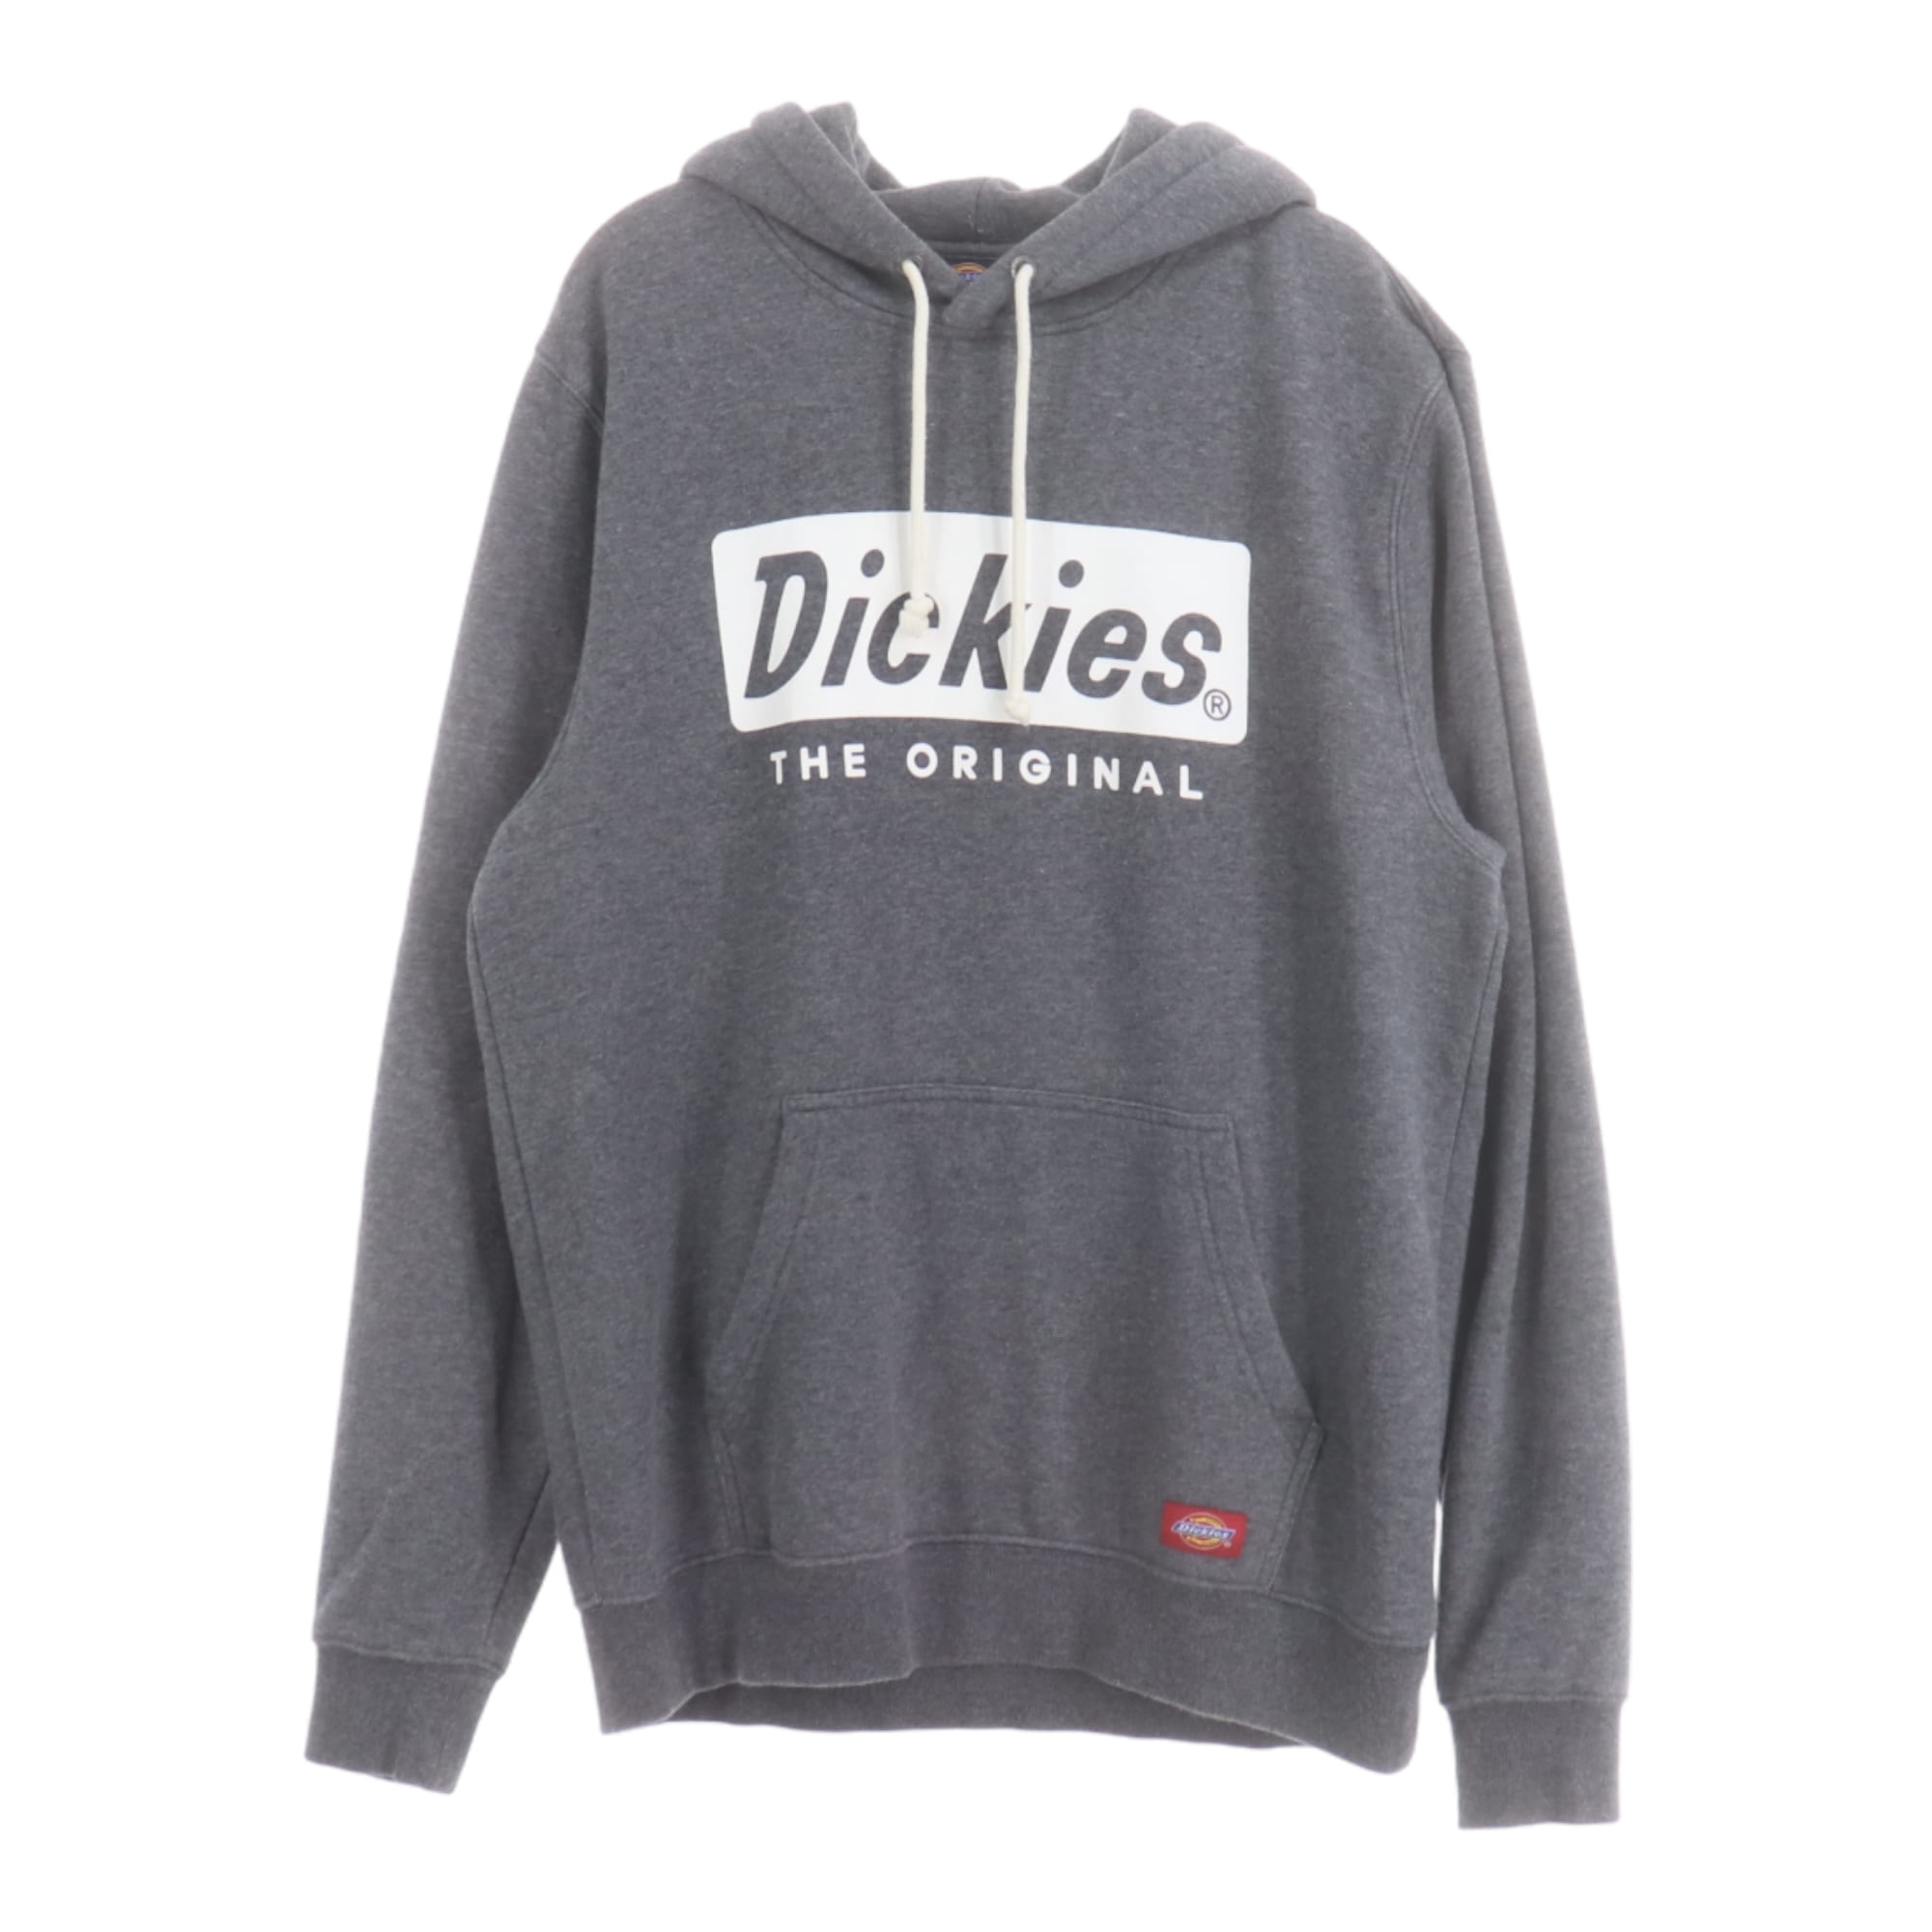 Dickies,Sweatshirts/Hoodies